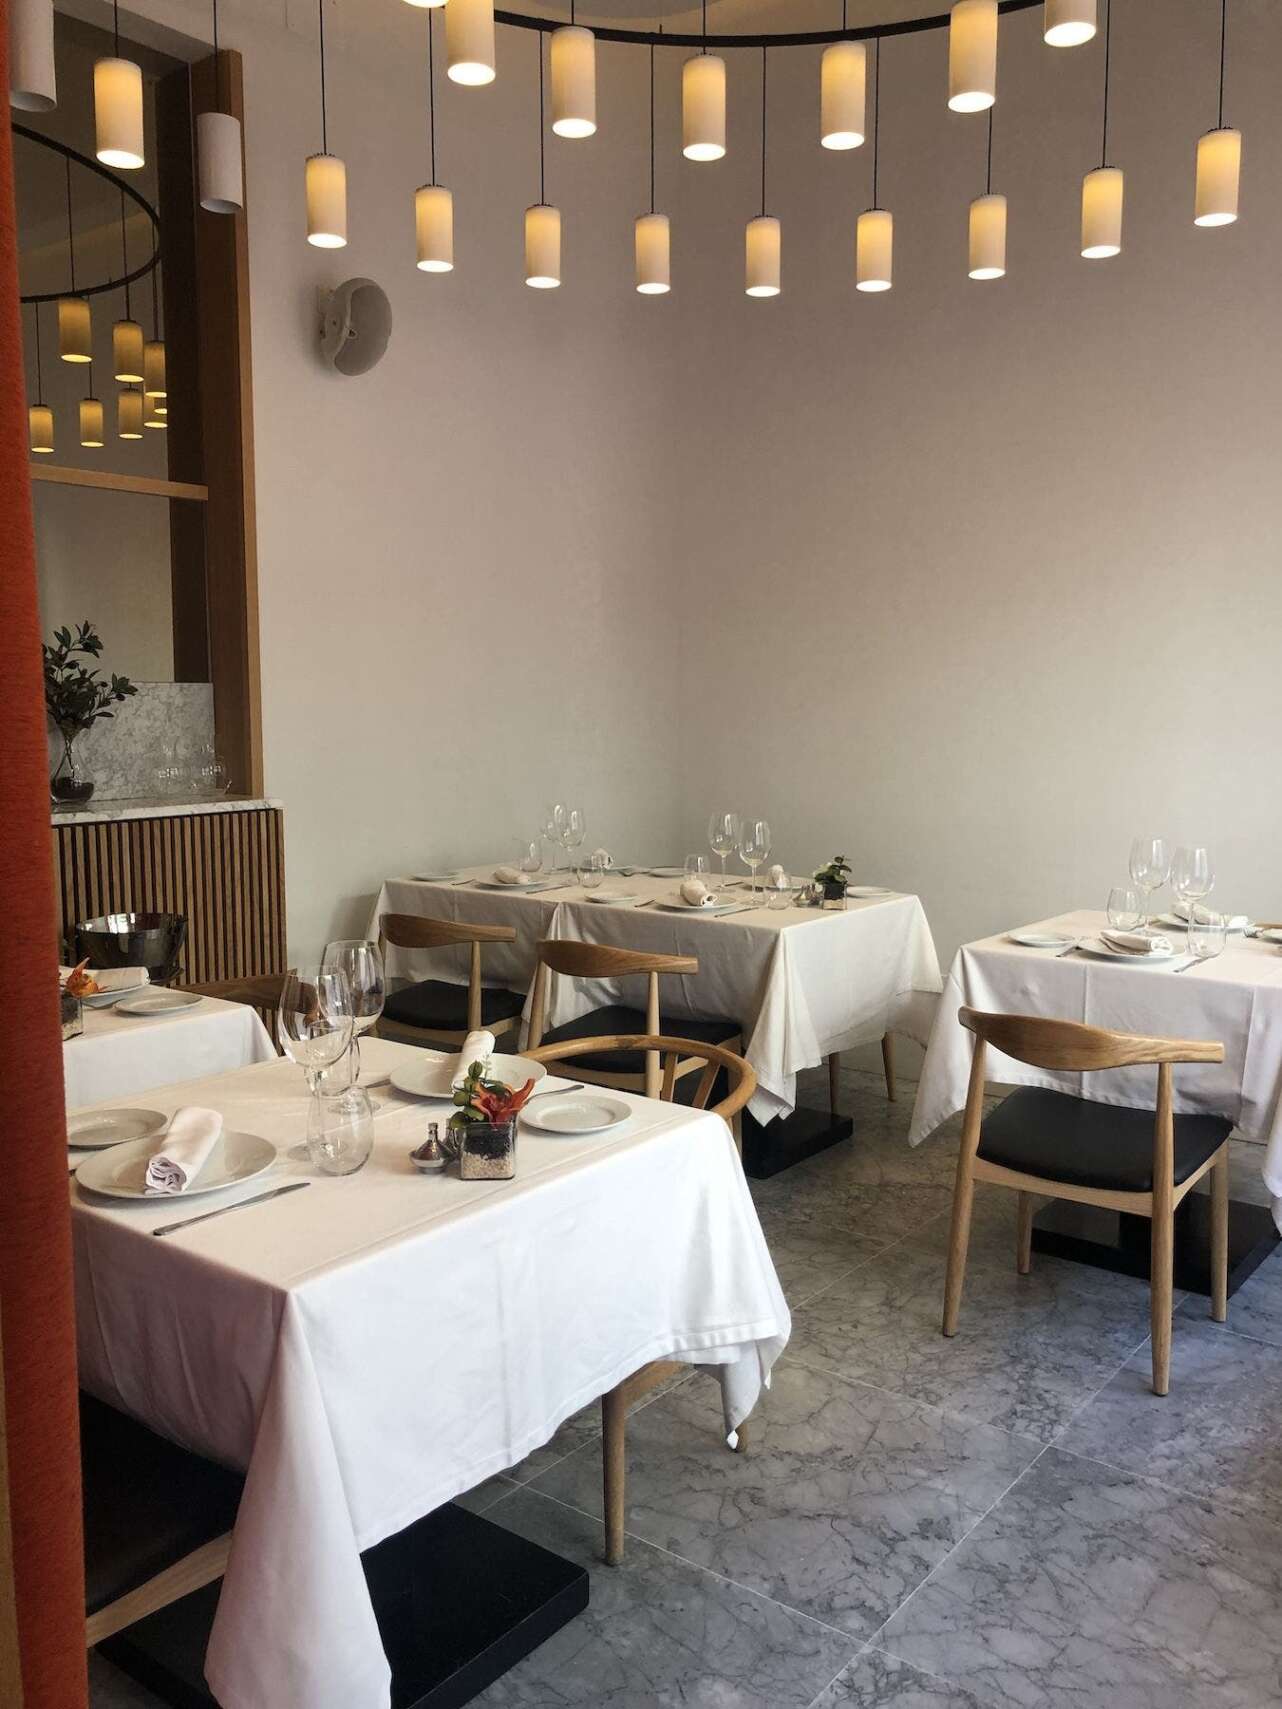 El comedor del restaurante Beluga es moderno y espacioso